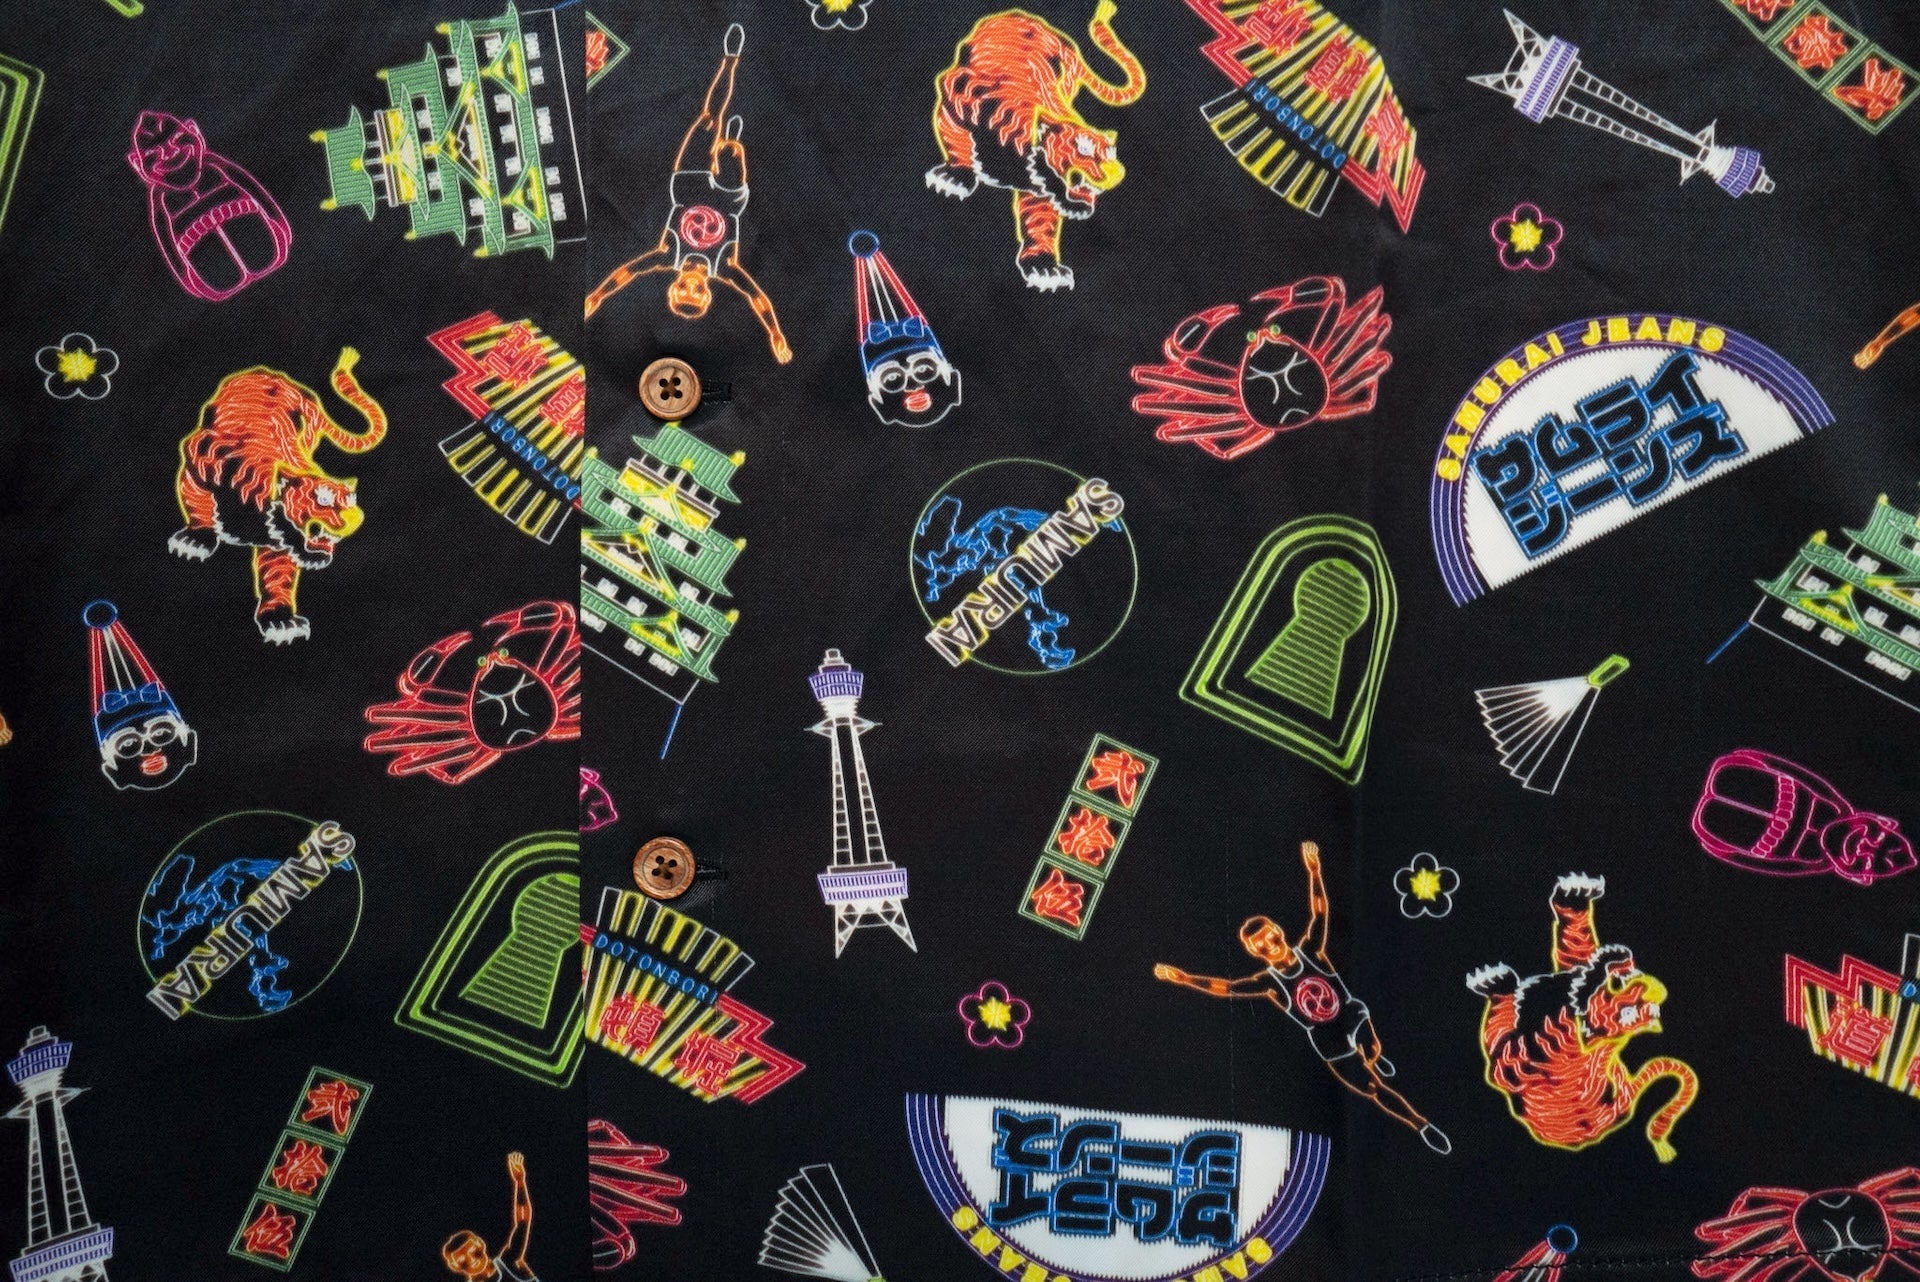 Samurai "Osaka Neon" Back Sateen S/S Aloha Shirt (25th Anniversary Limited)